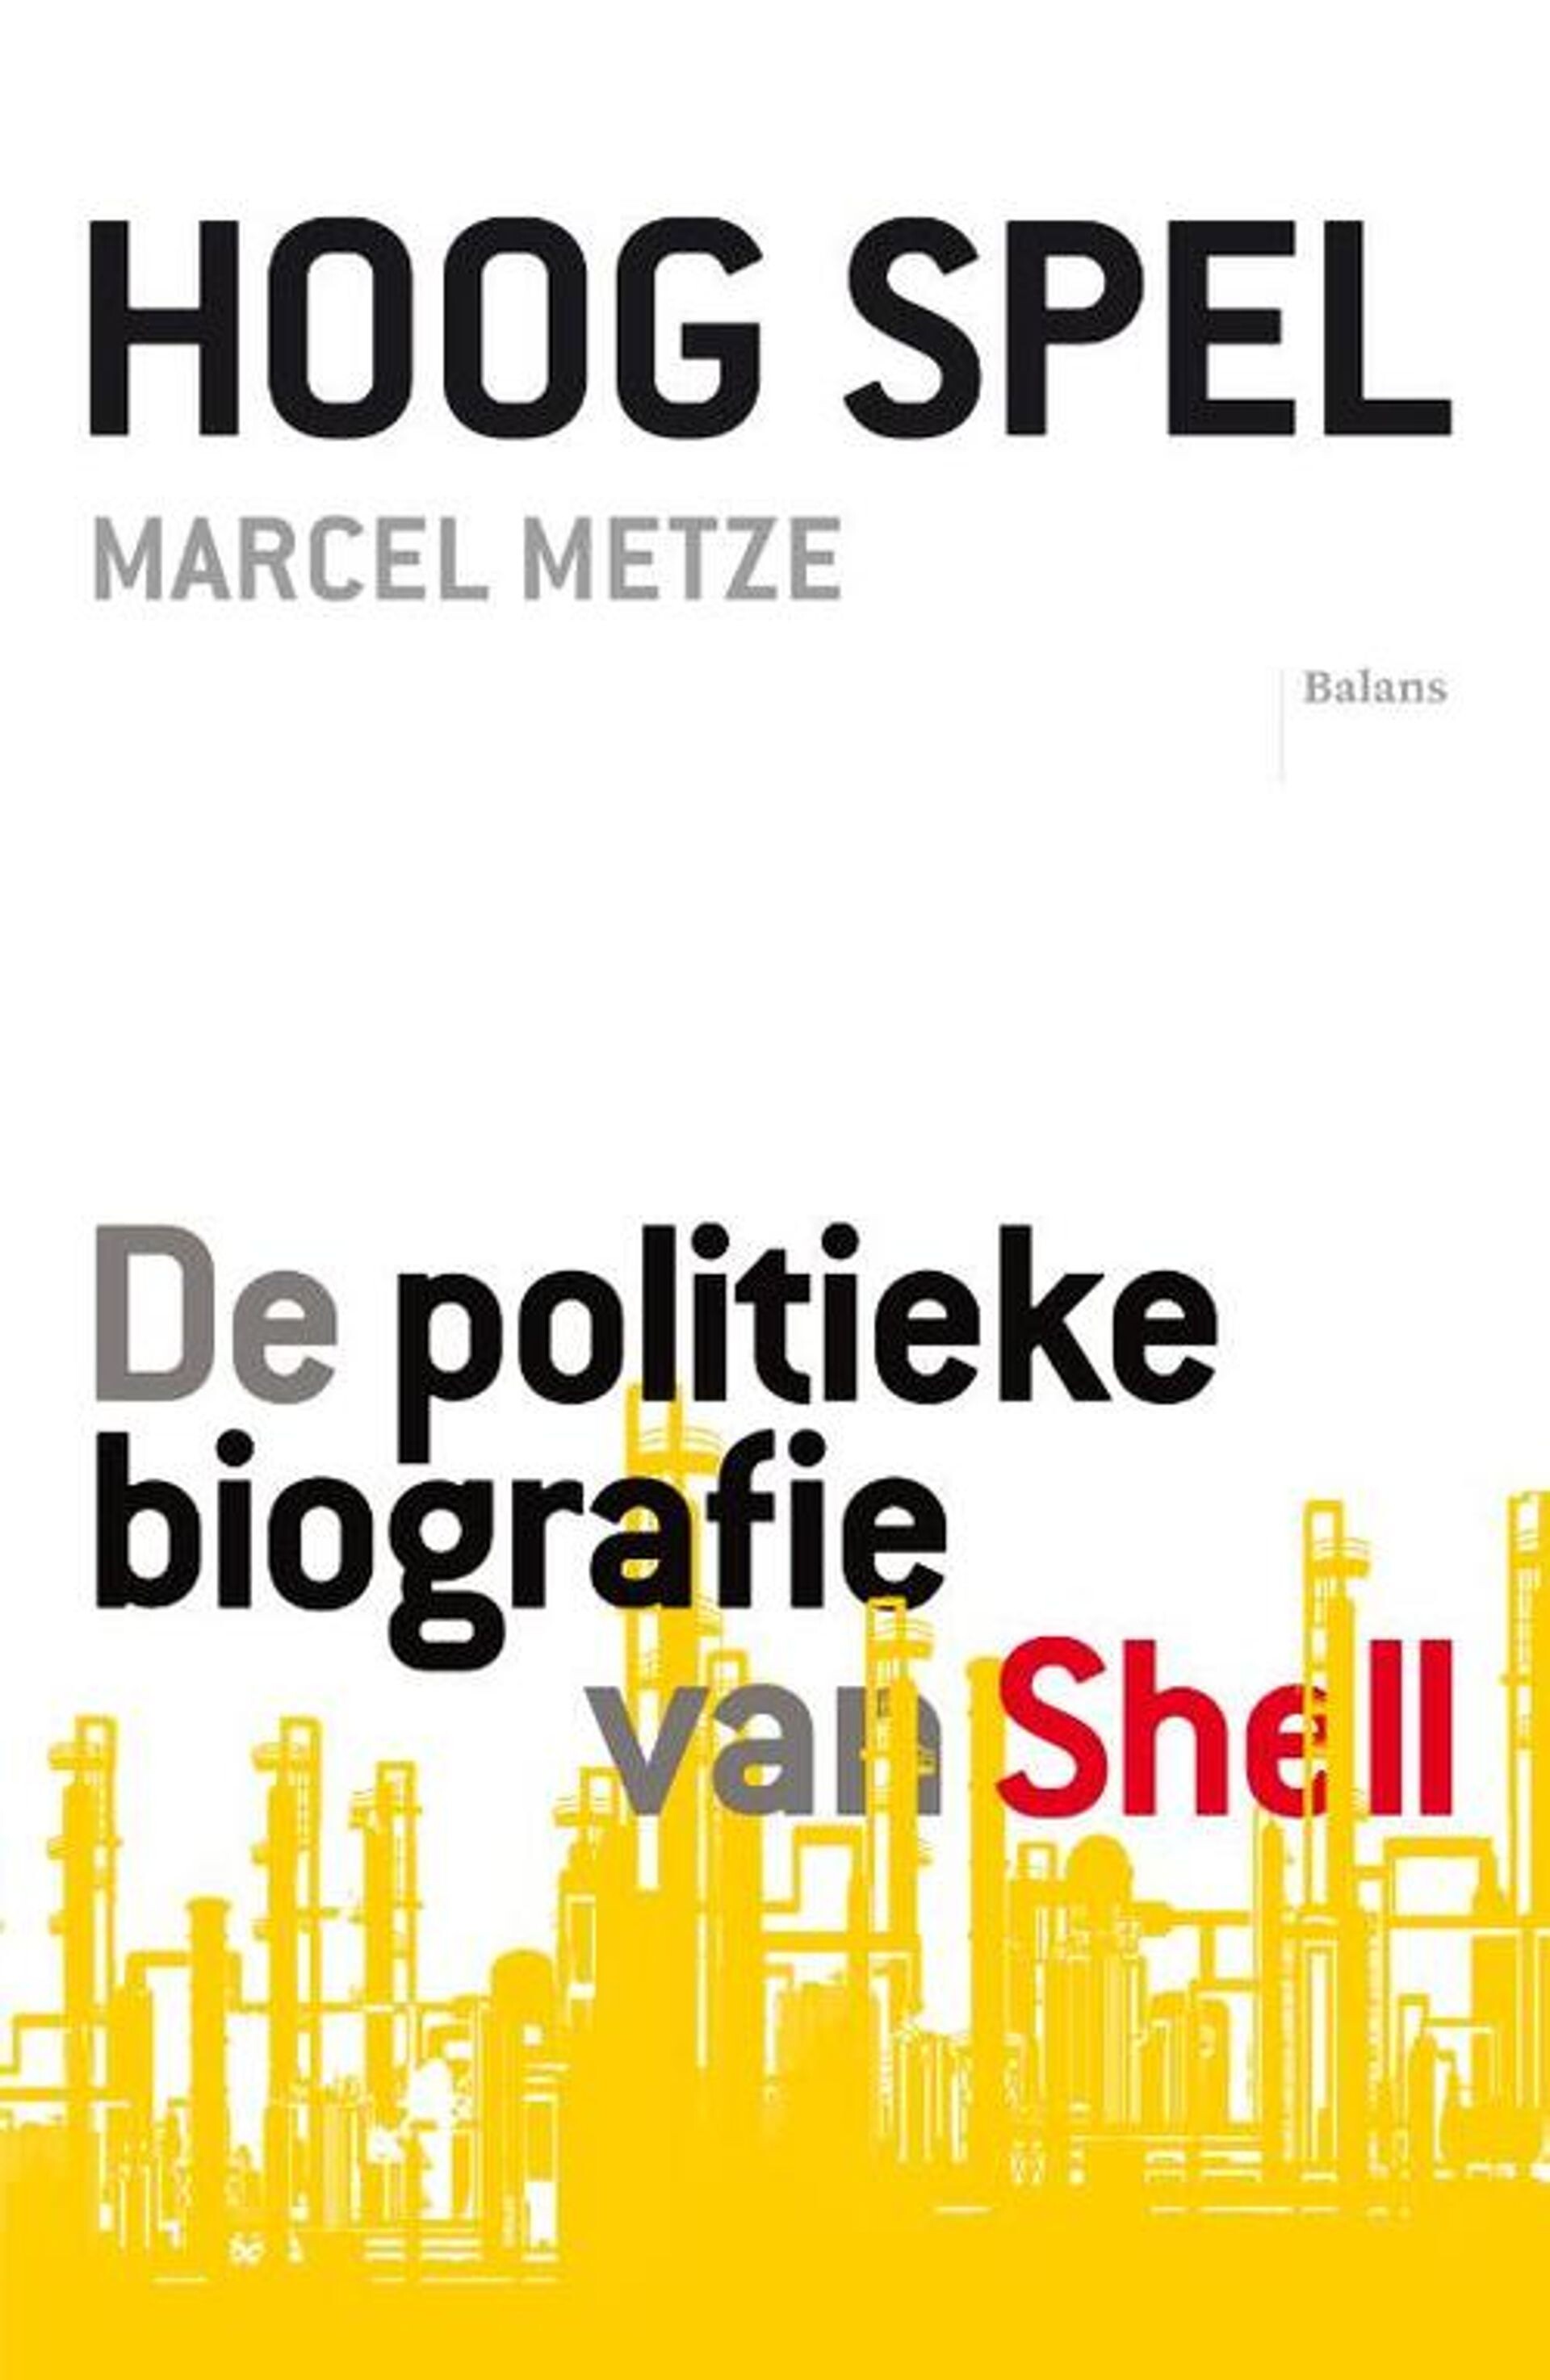 #1413 - Nieuw boek laat morele ziekte in Shell zien